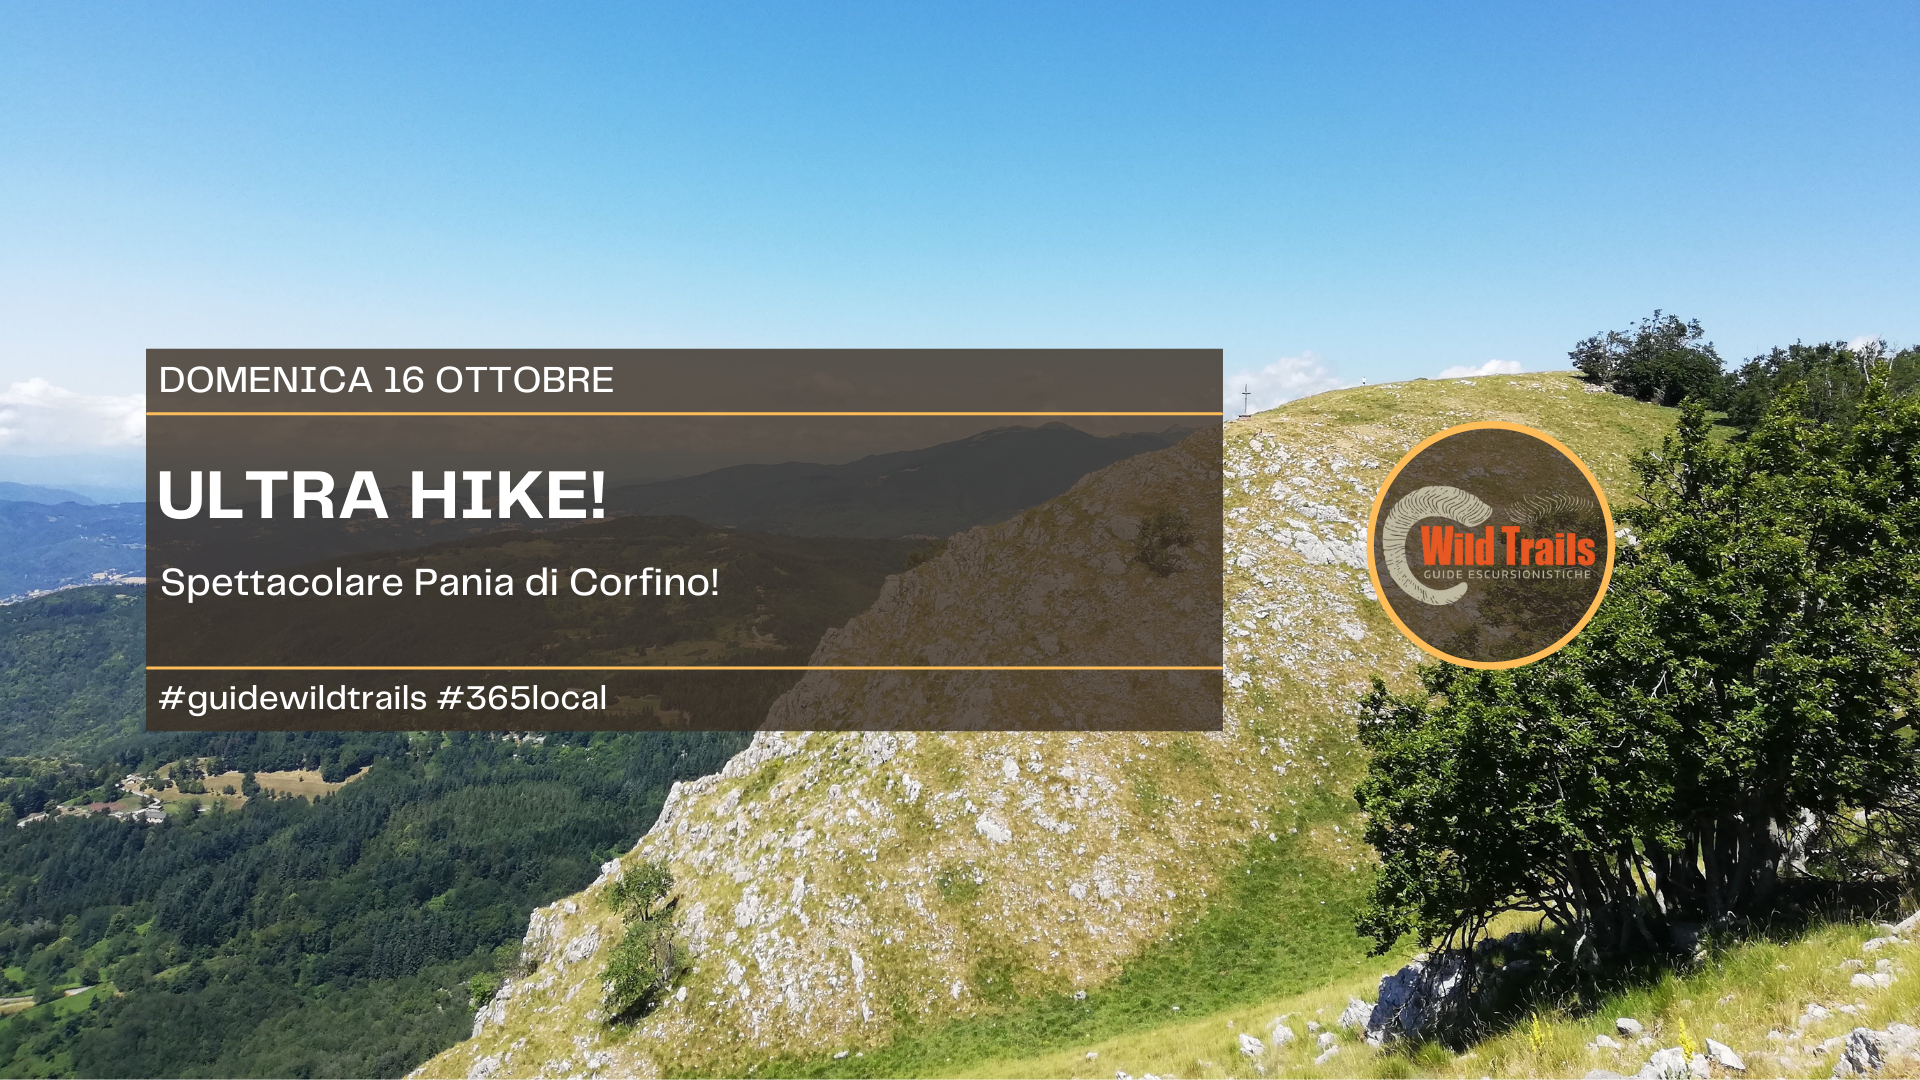 Ultra Hike! Spettacolare Pania di Corfino!